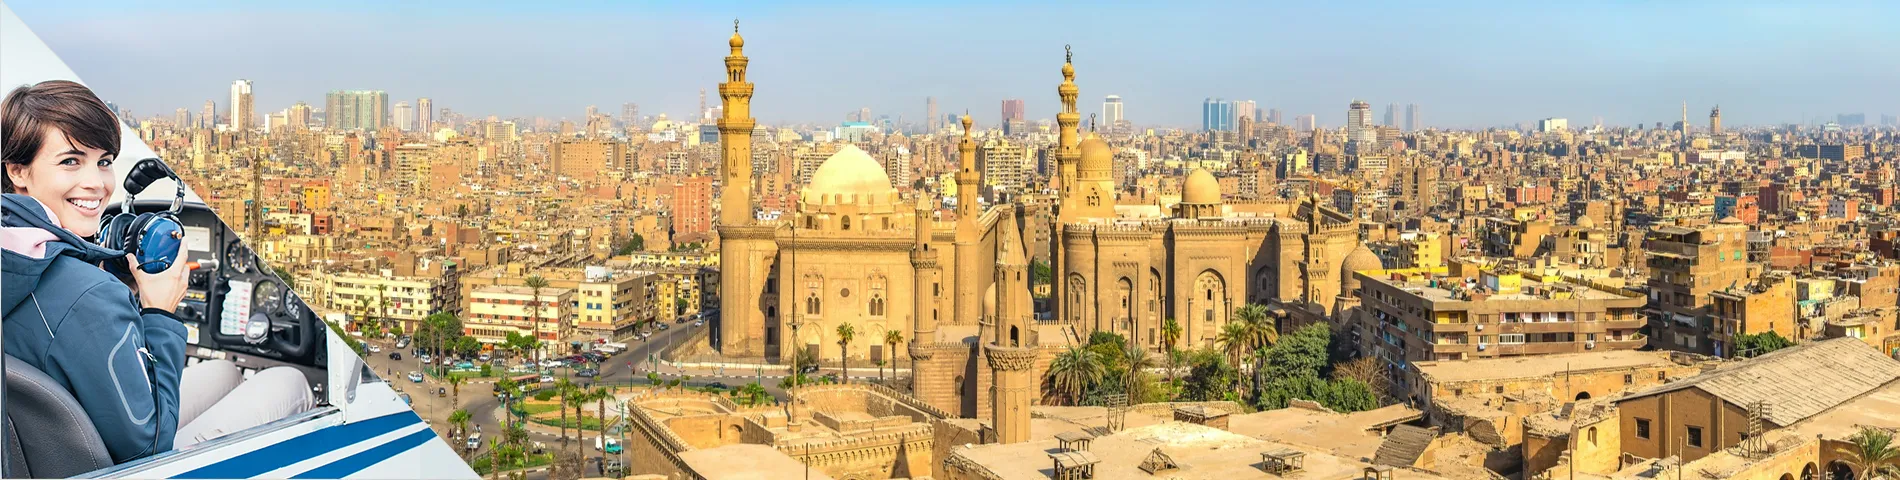 Kairo - Arabisk for Flykunnskap